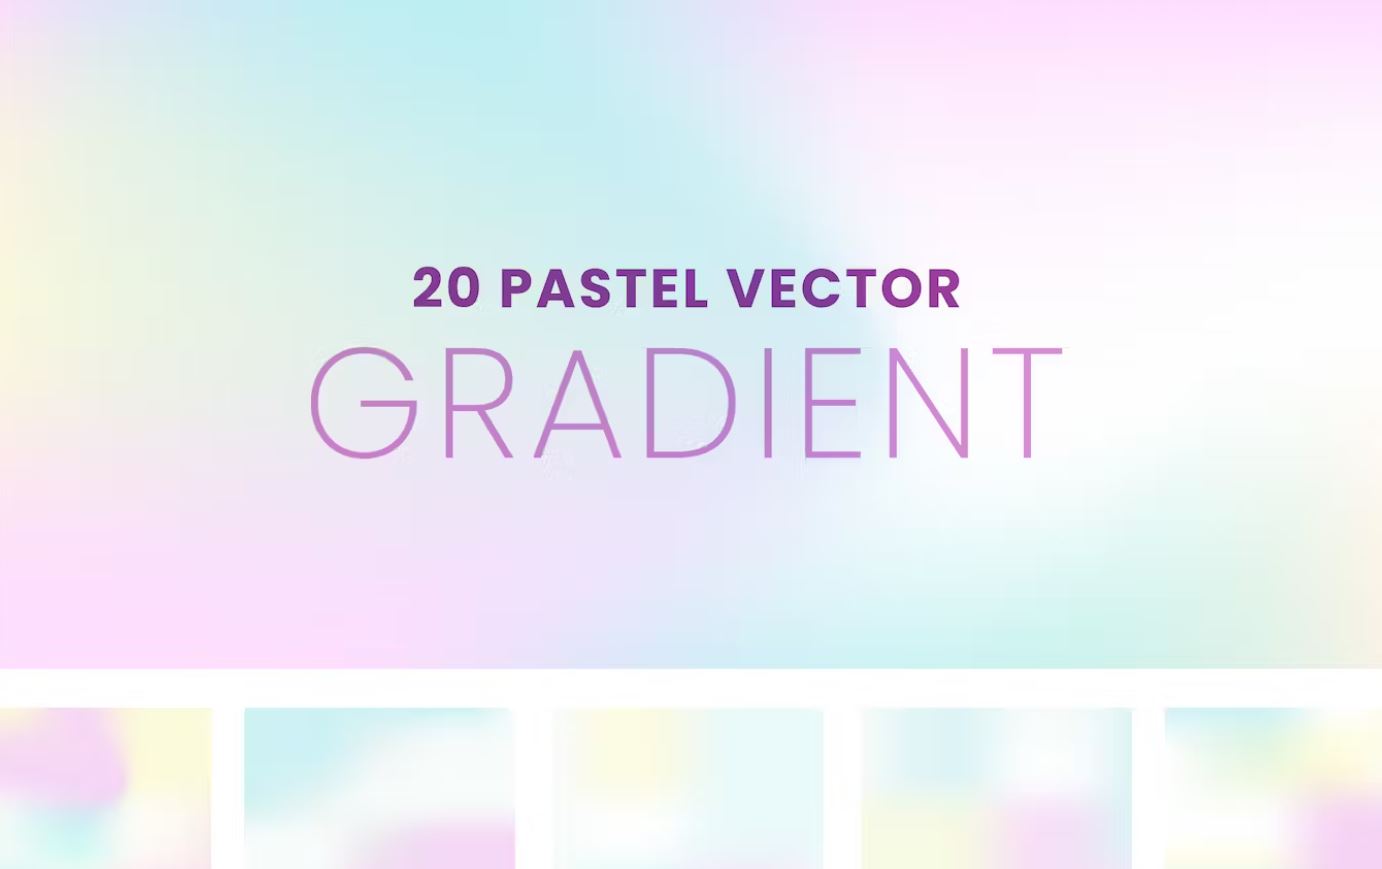 20 Unique Pastel Gradients and Vectors